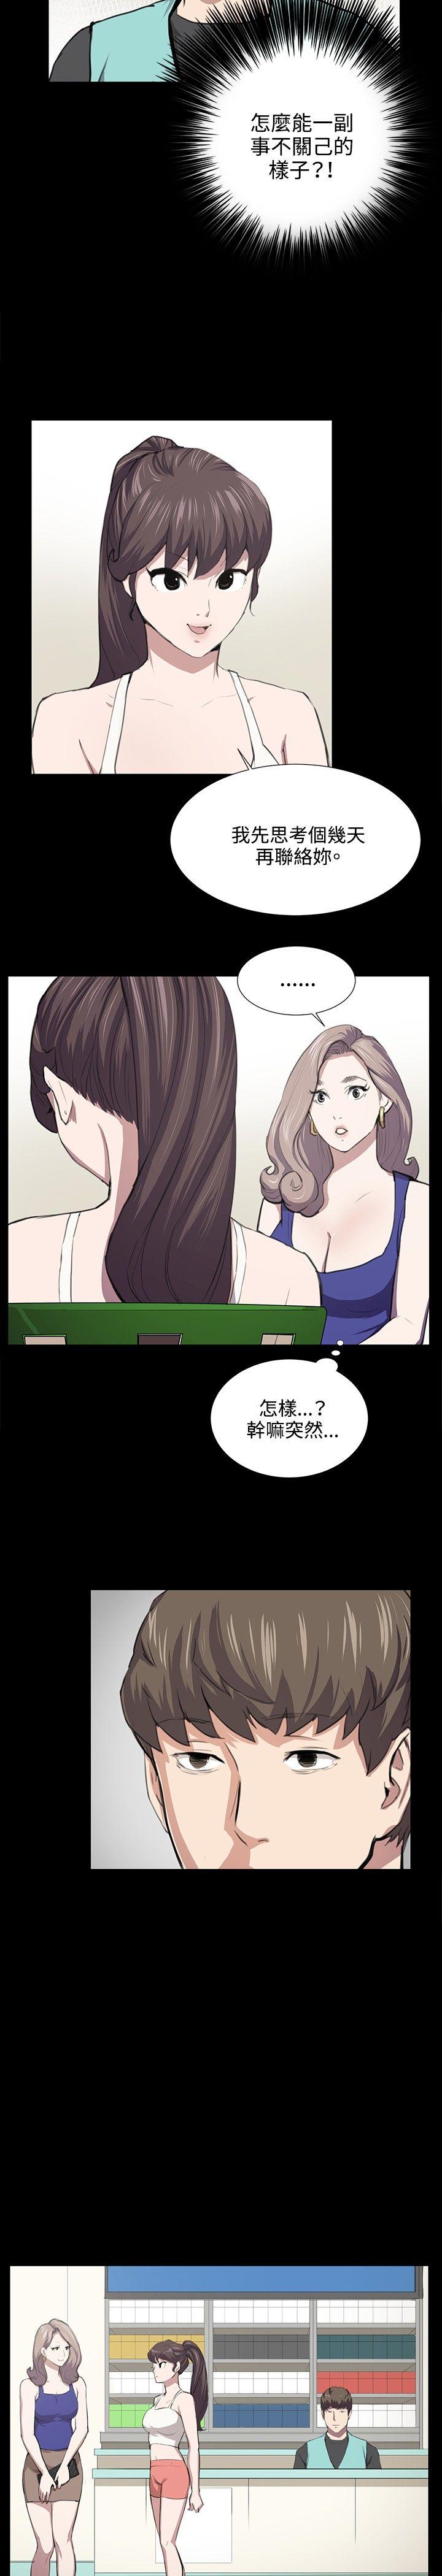 韩国污漫画 深夜便利店 第48话 9